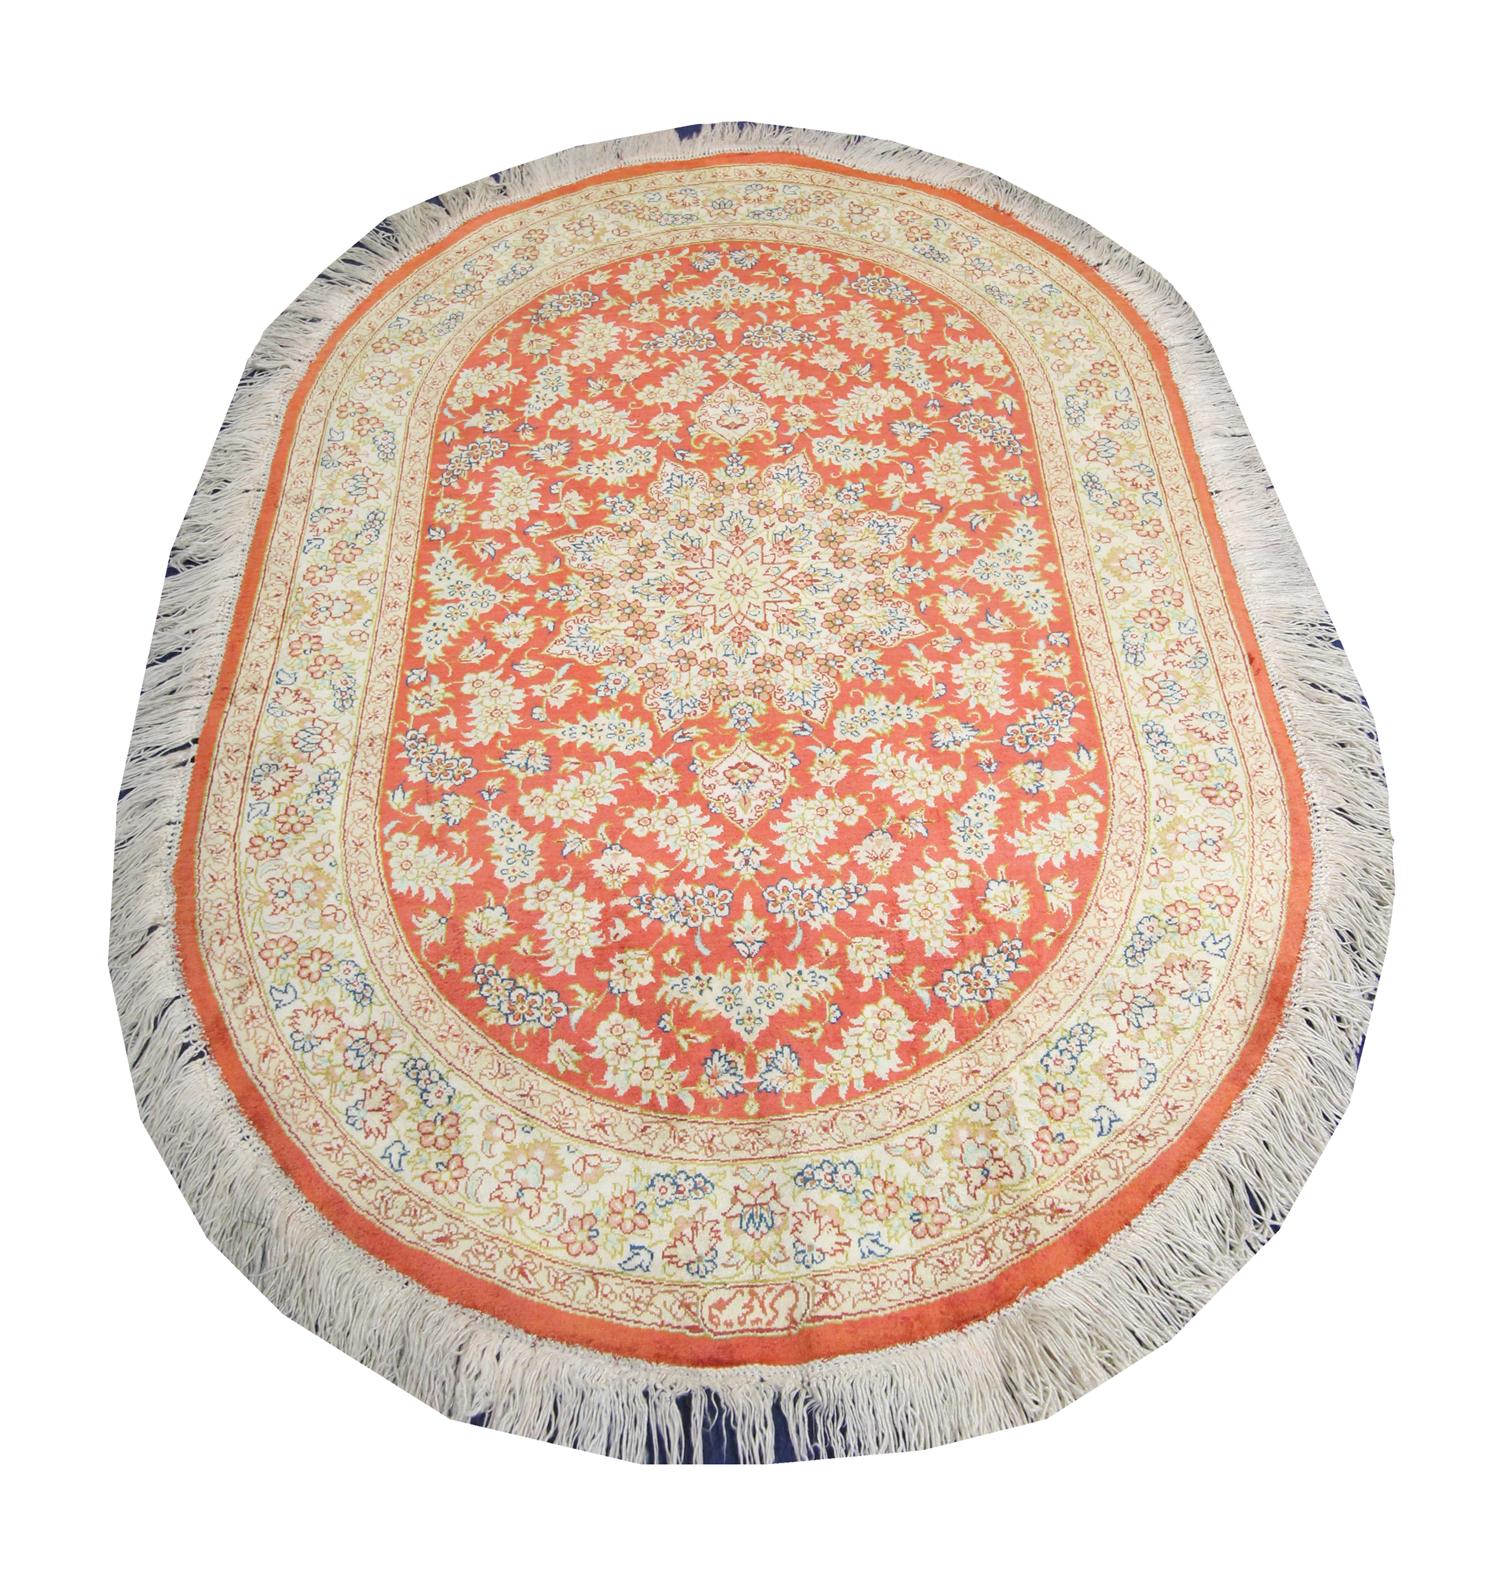 Dieser feine Pue-Seidenteppich wurde in den 1990er Jahren in der Türkei von Hand gewebt. Es zeichnet sich durch einen satten rot-orangen Hintergrund mit creme- und beigefarbenen Akzenten aus, die das symmetrische orientalische Medaillonmuster